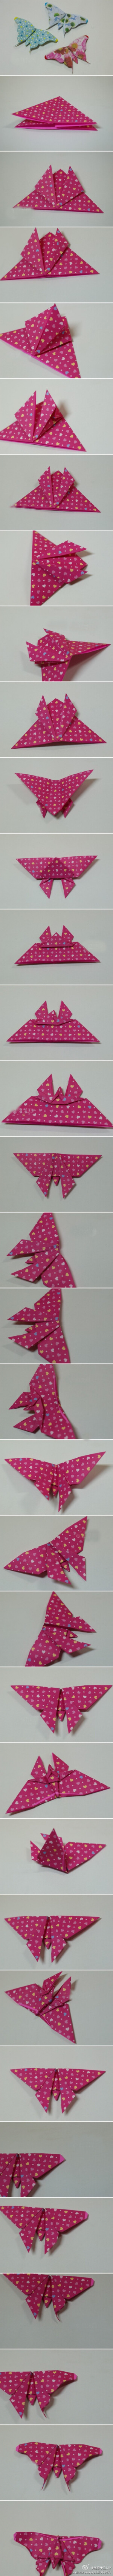 漂亮的蝴蝶折纸，有点长，慢慢看完哟~喜欢就拿走吧！！